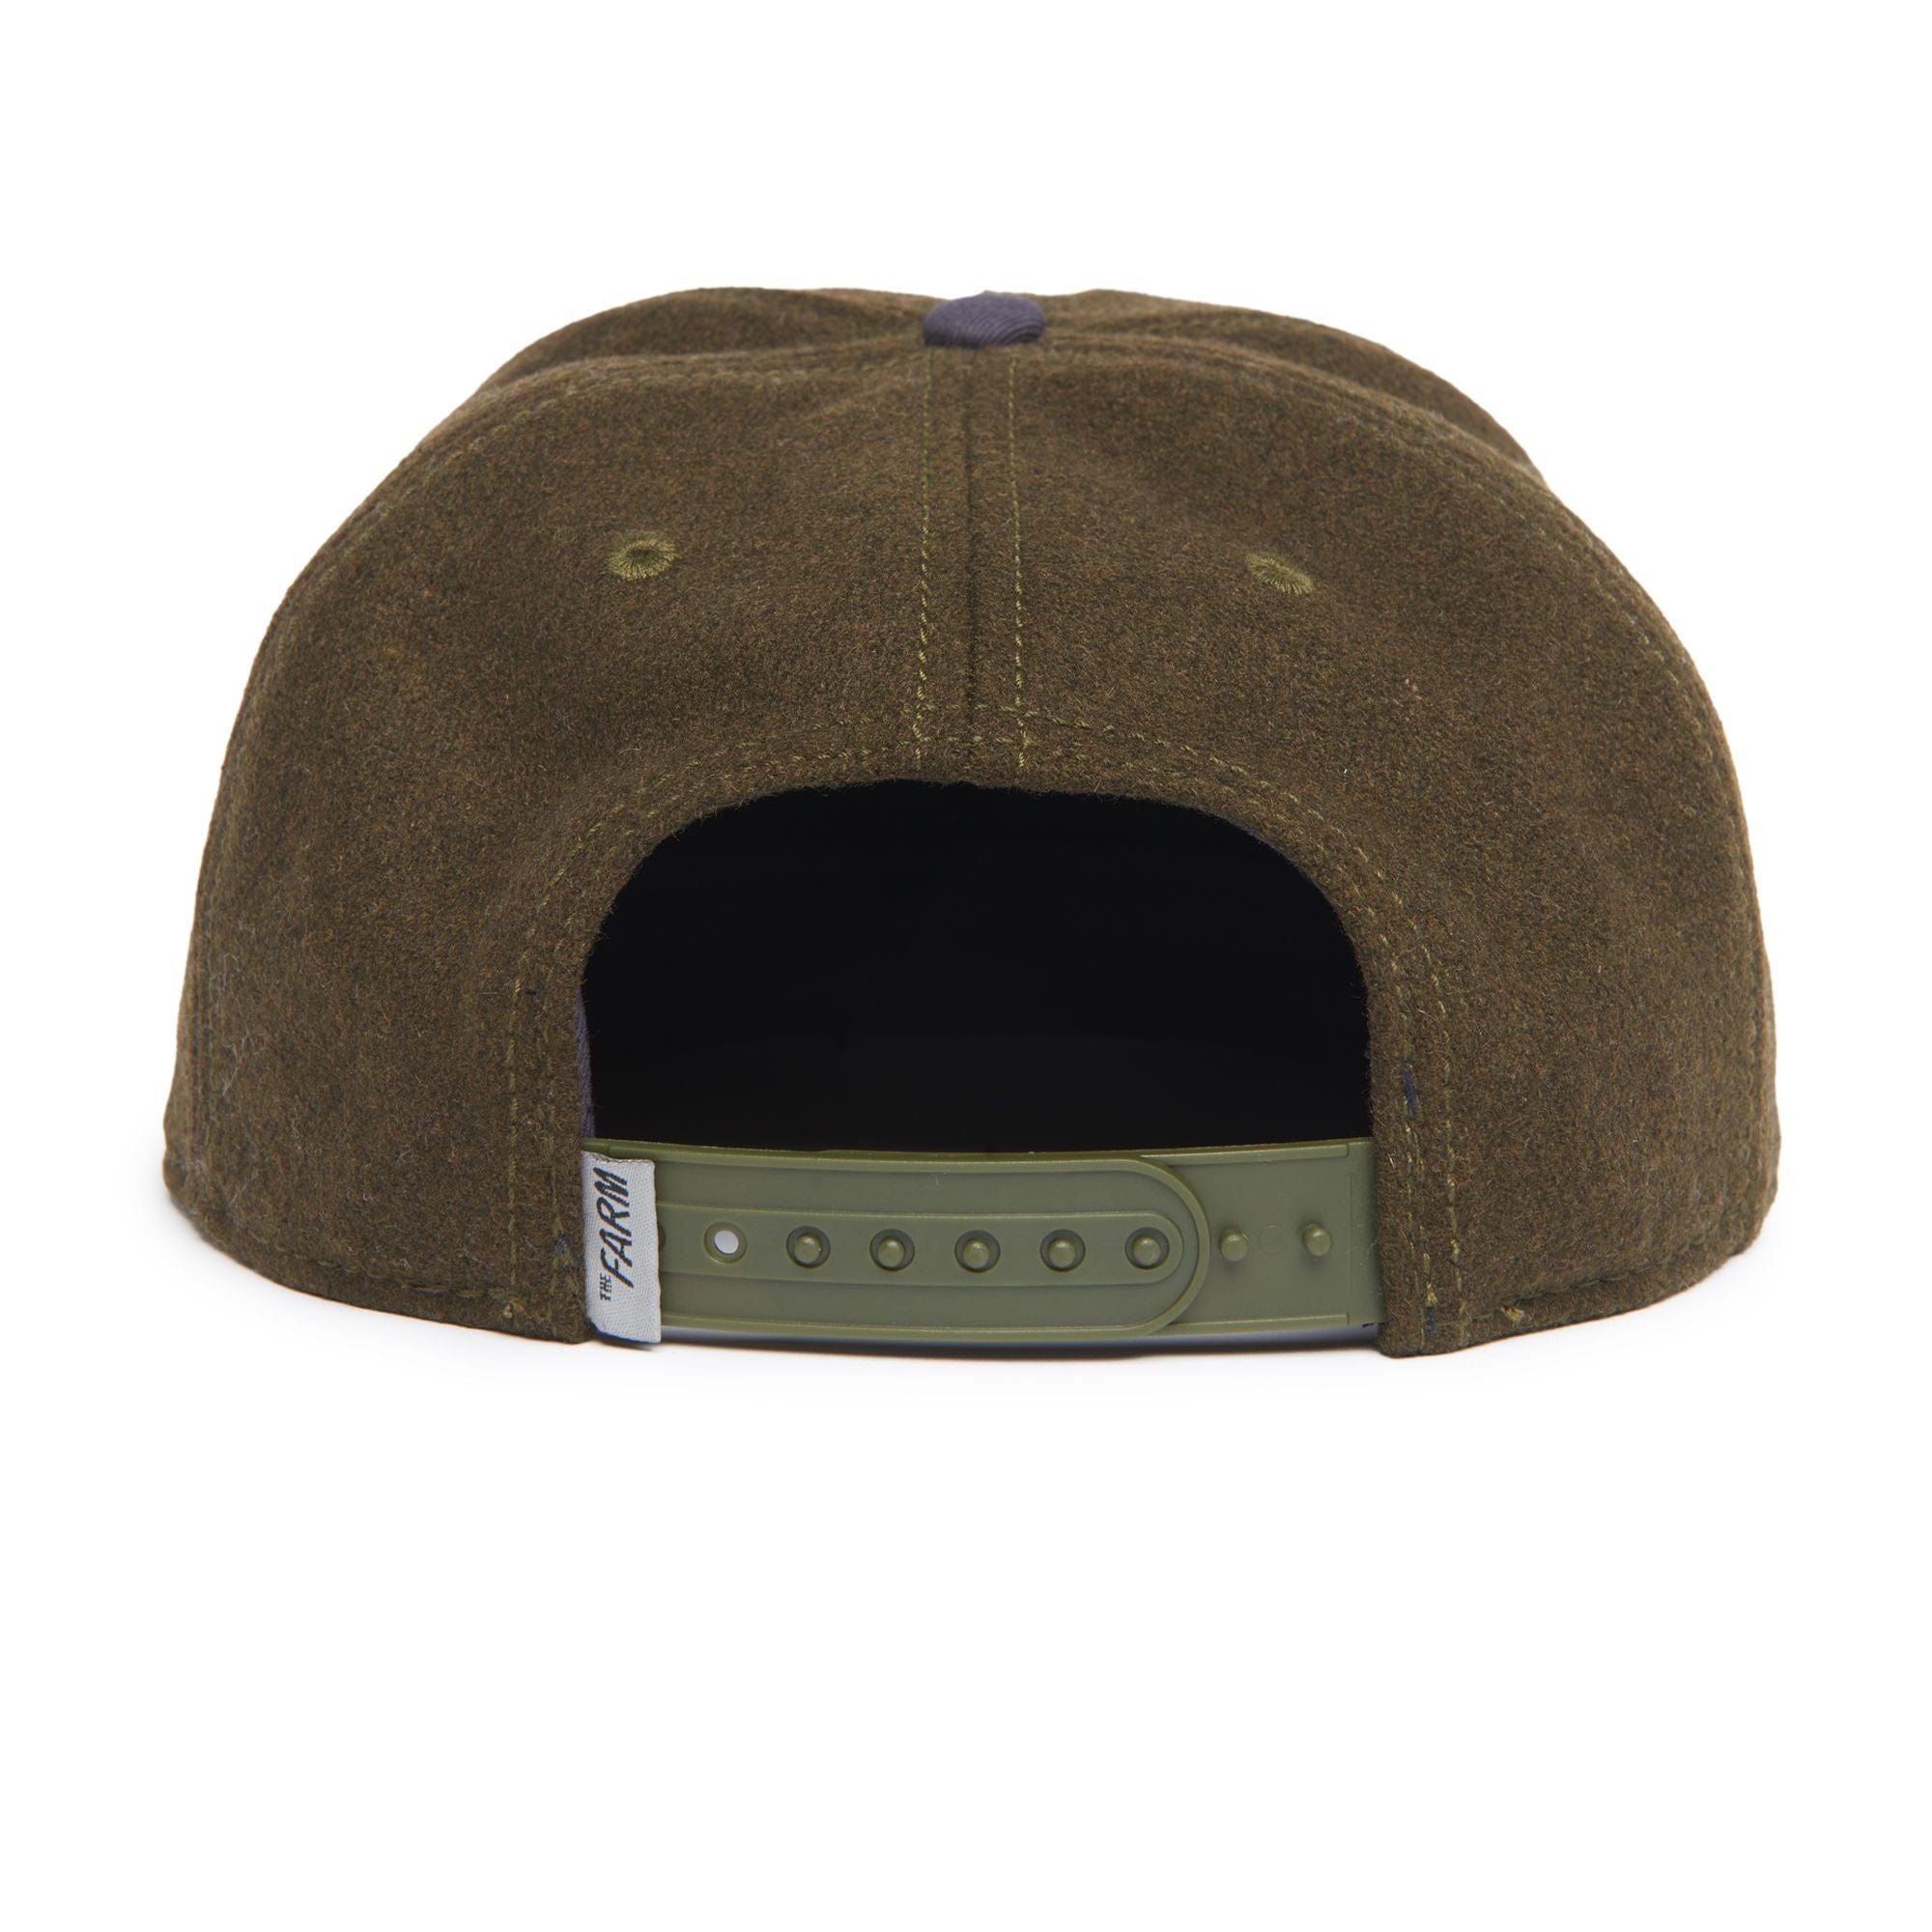 Goorin Olive Goorin Top Dog Trucker Hat